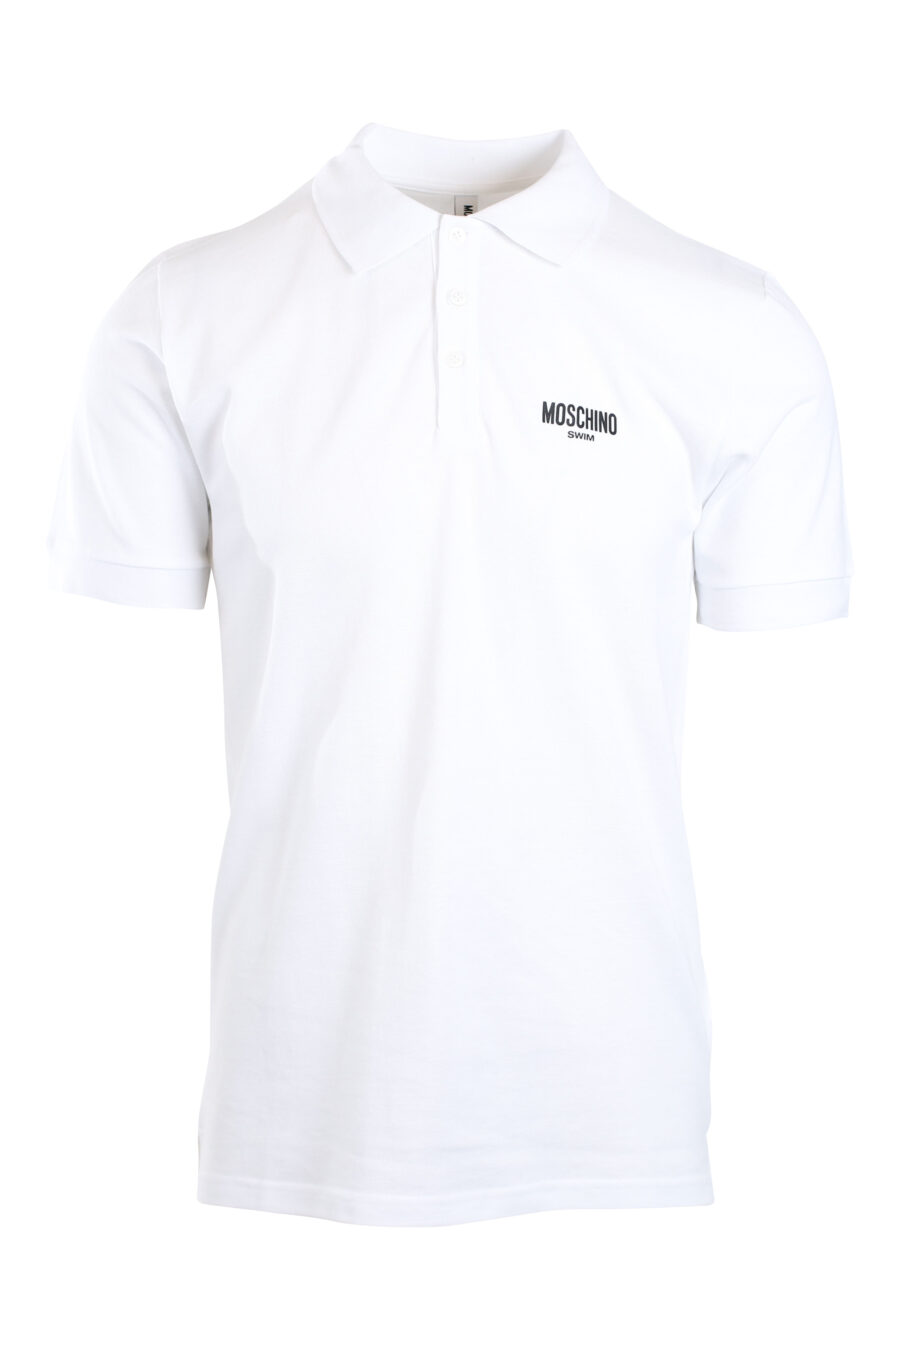 White polo shirt with black mini-logo "swim" - IMG 2179